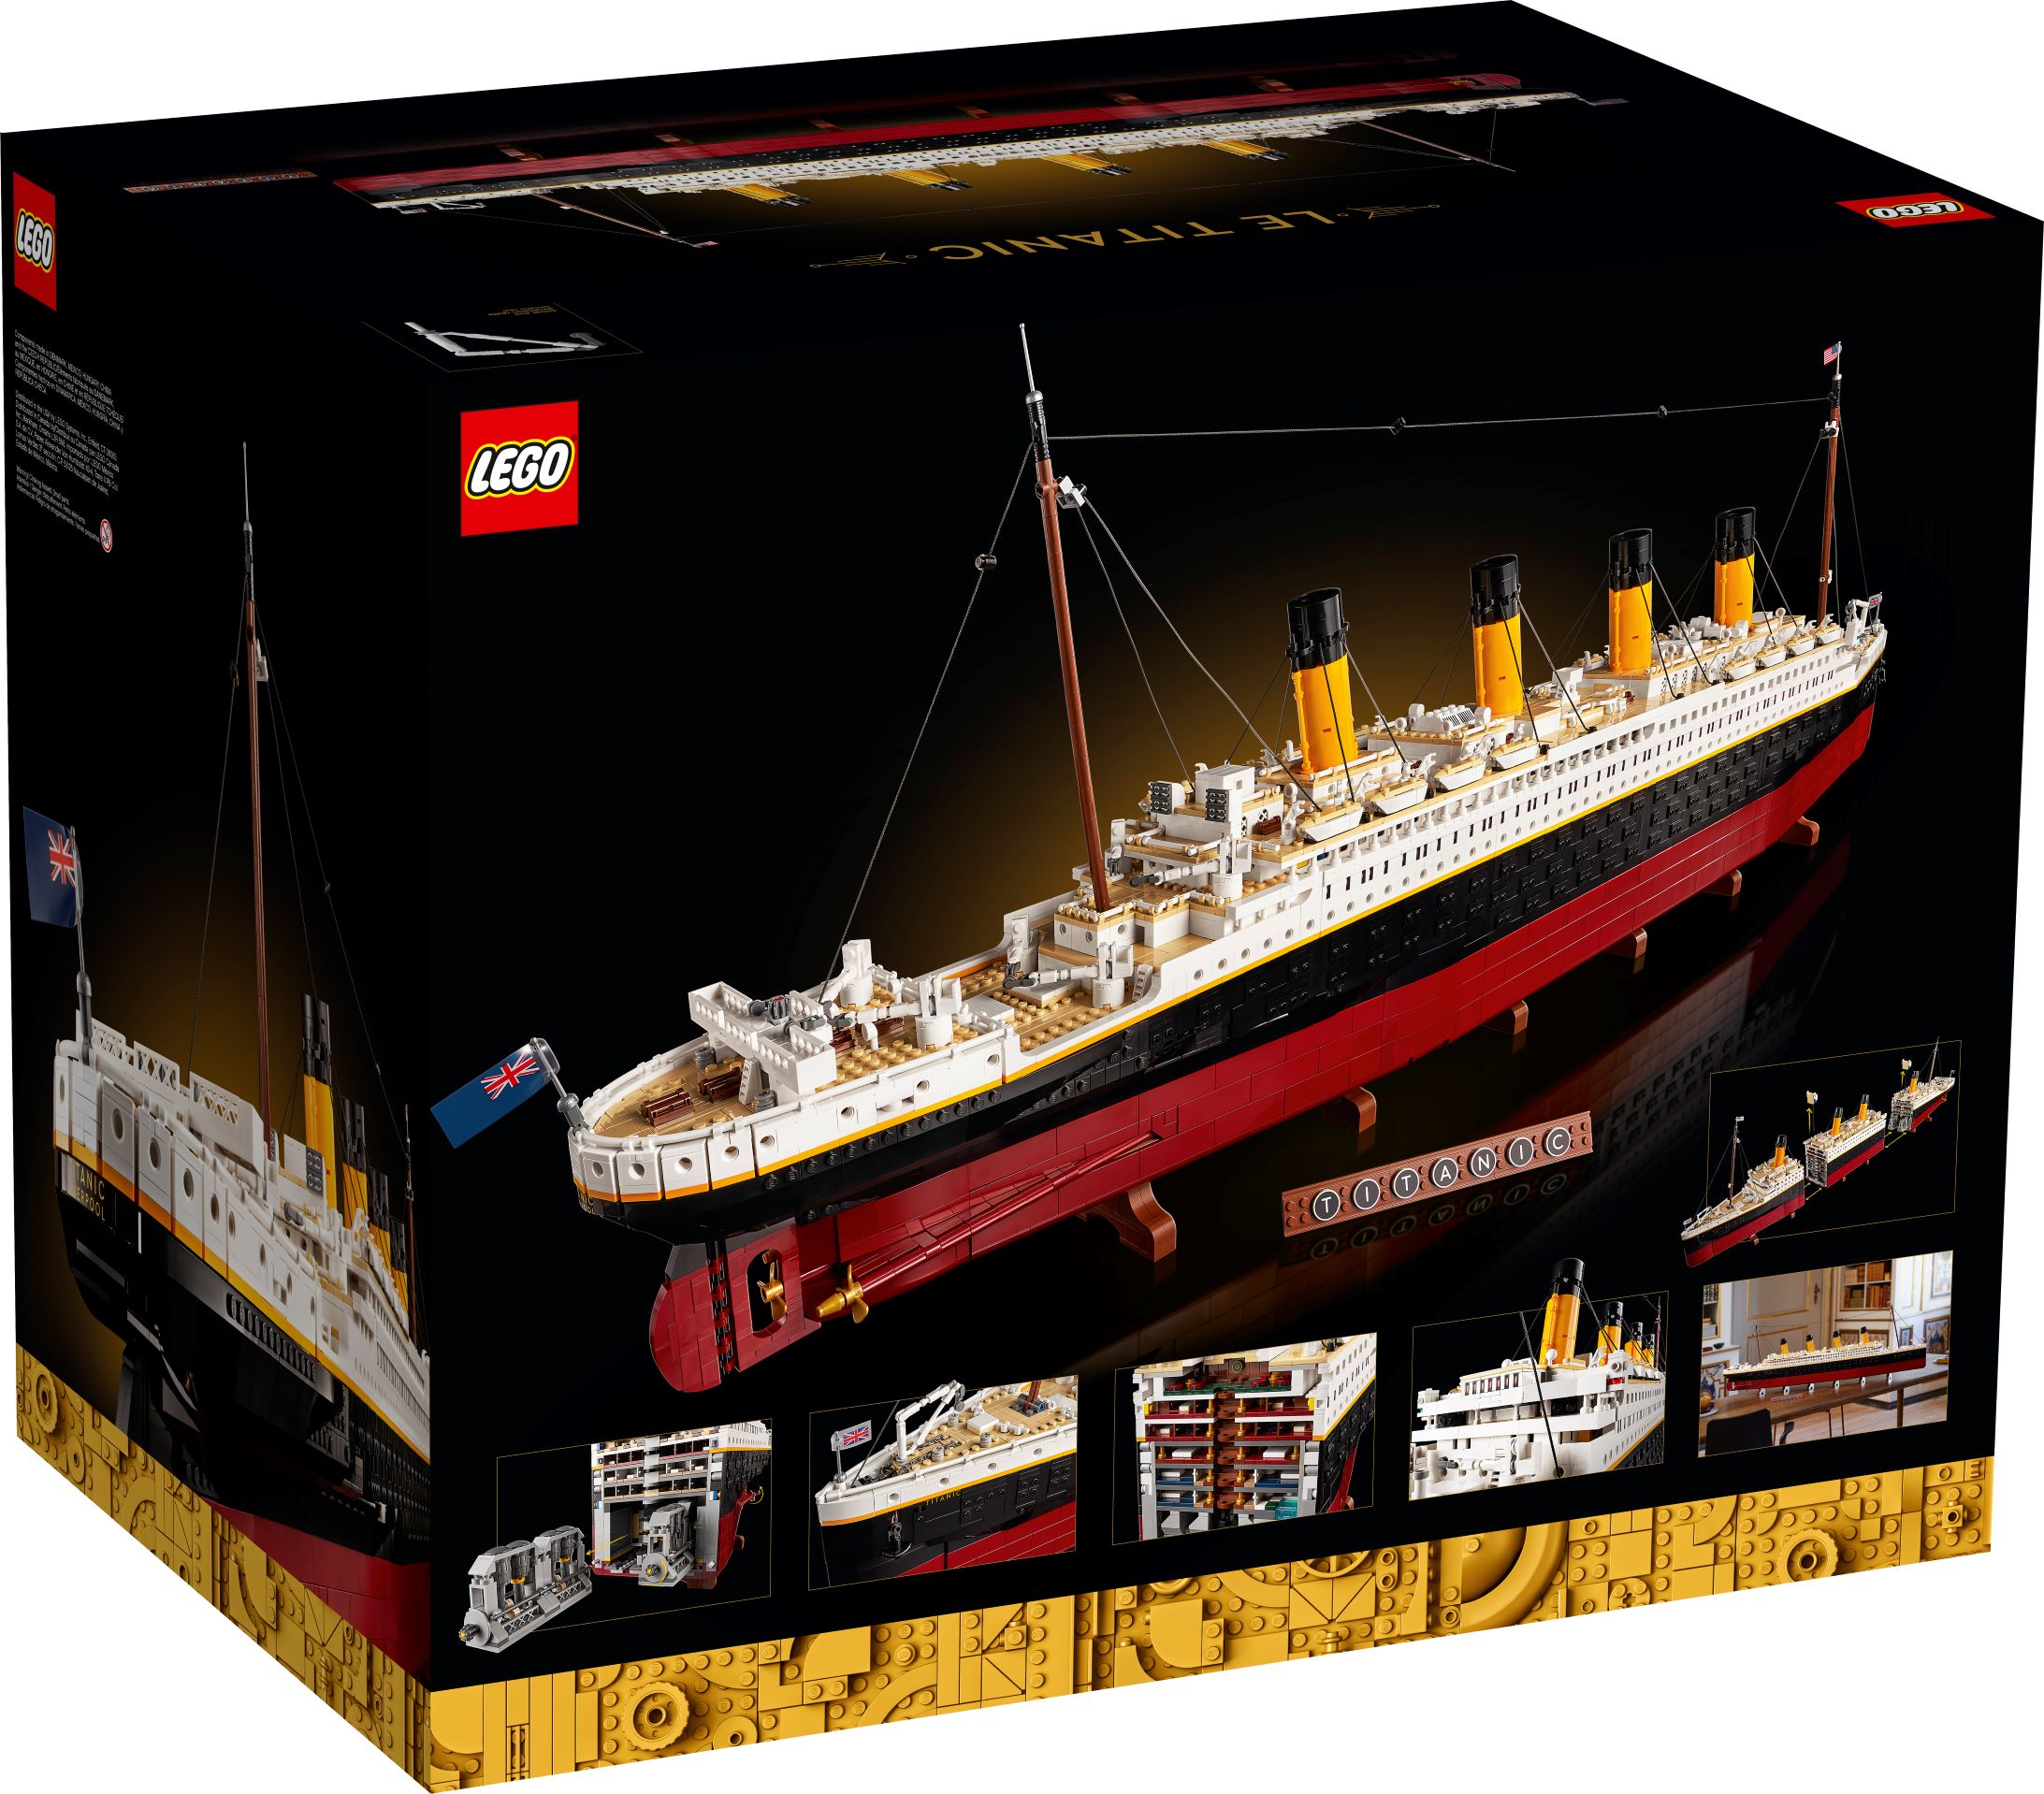 LEGO Replika RMS Titanic. (Dok. LEGO Group)